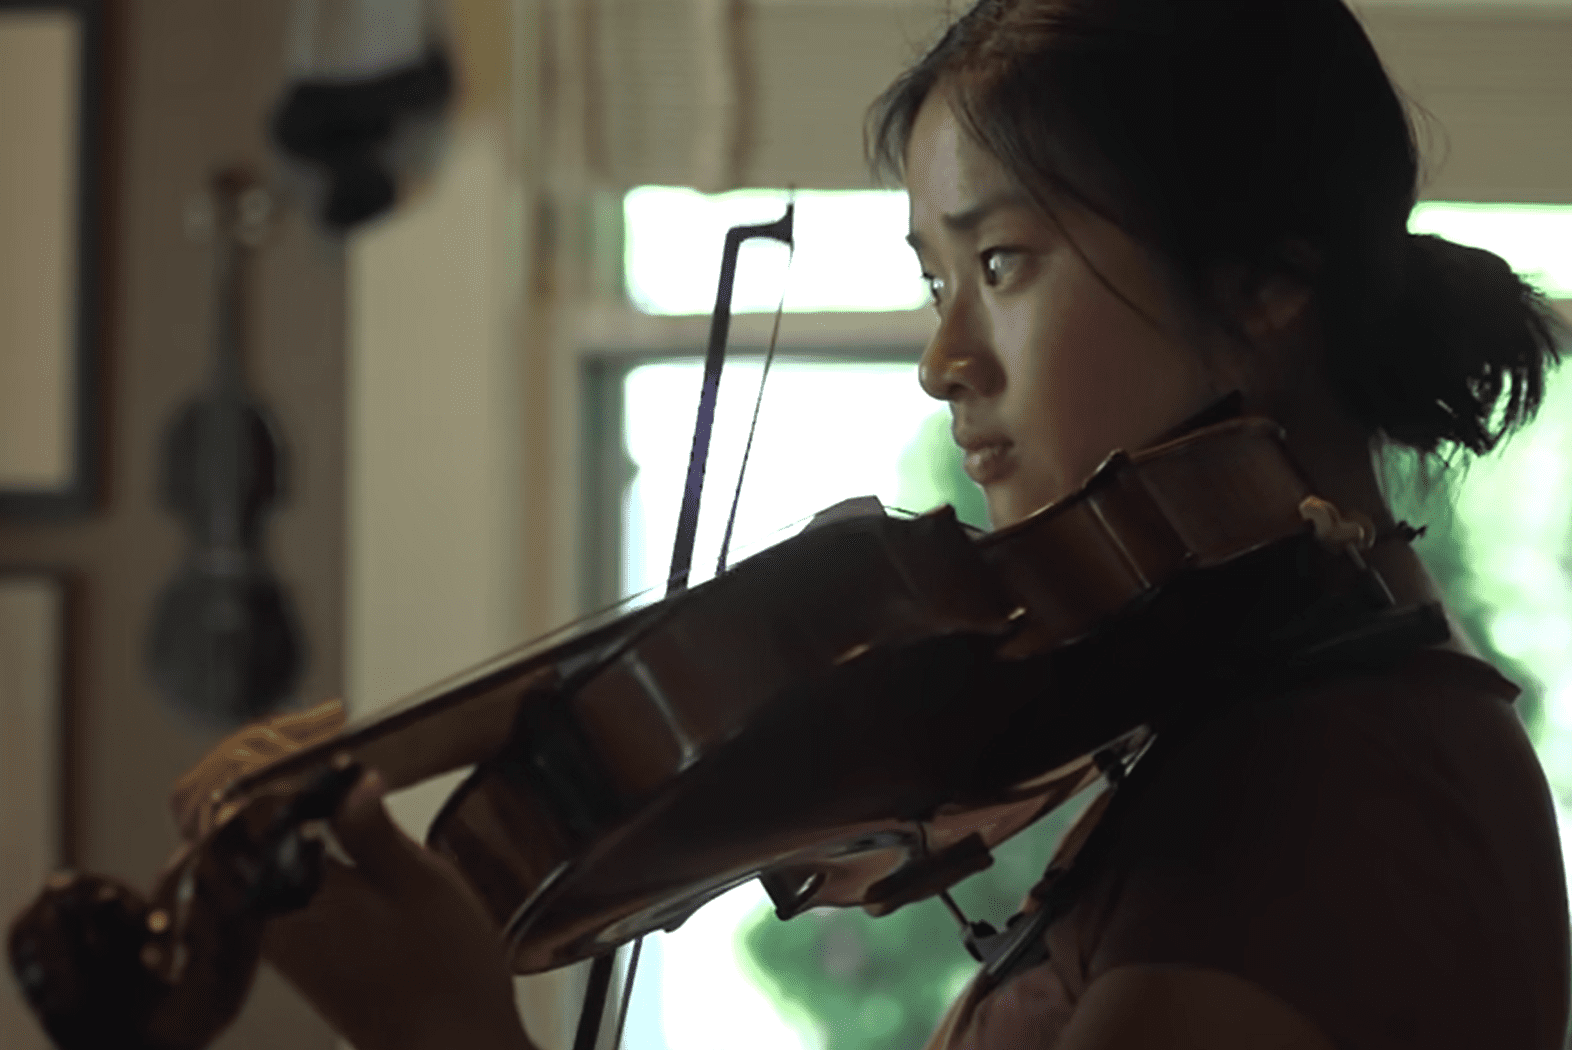  Kati Pohler tocando un violin. | Foto: Youtube.com/BBC Stories